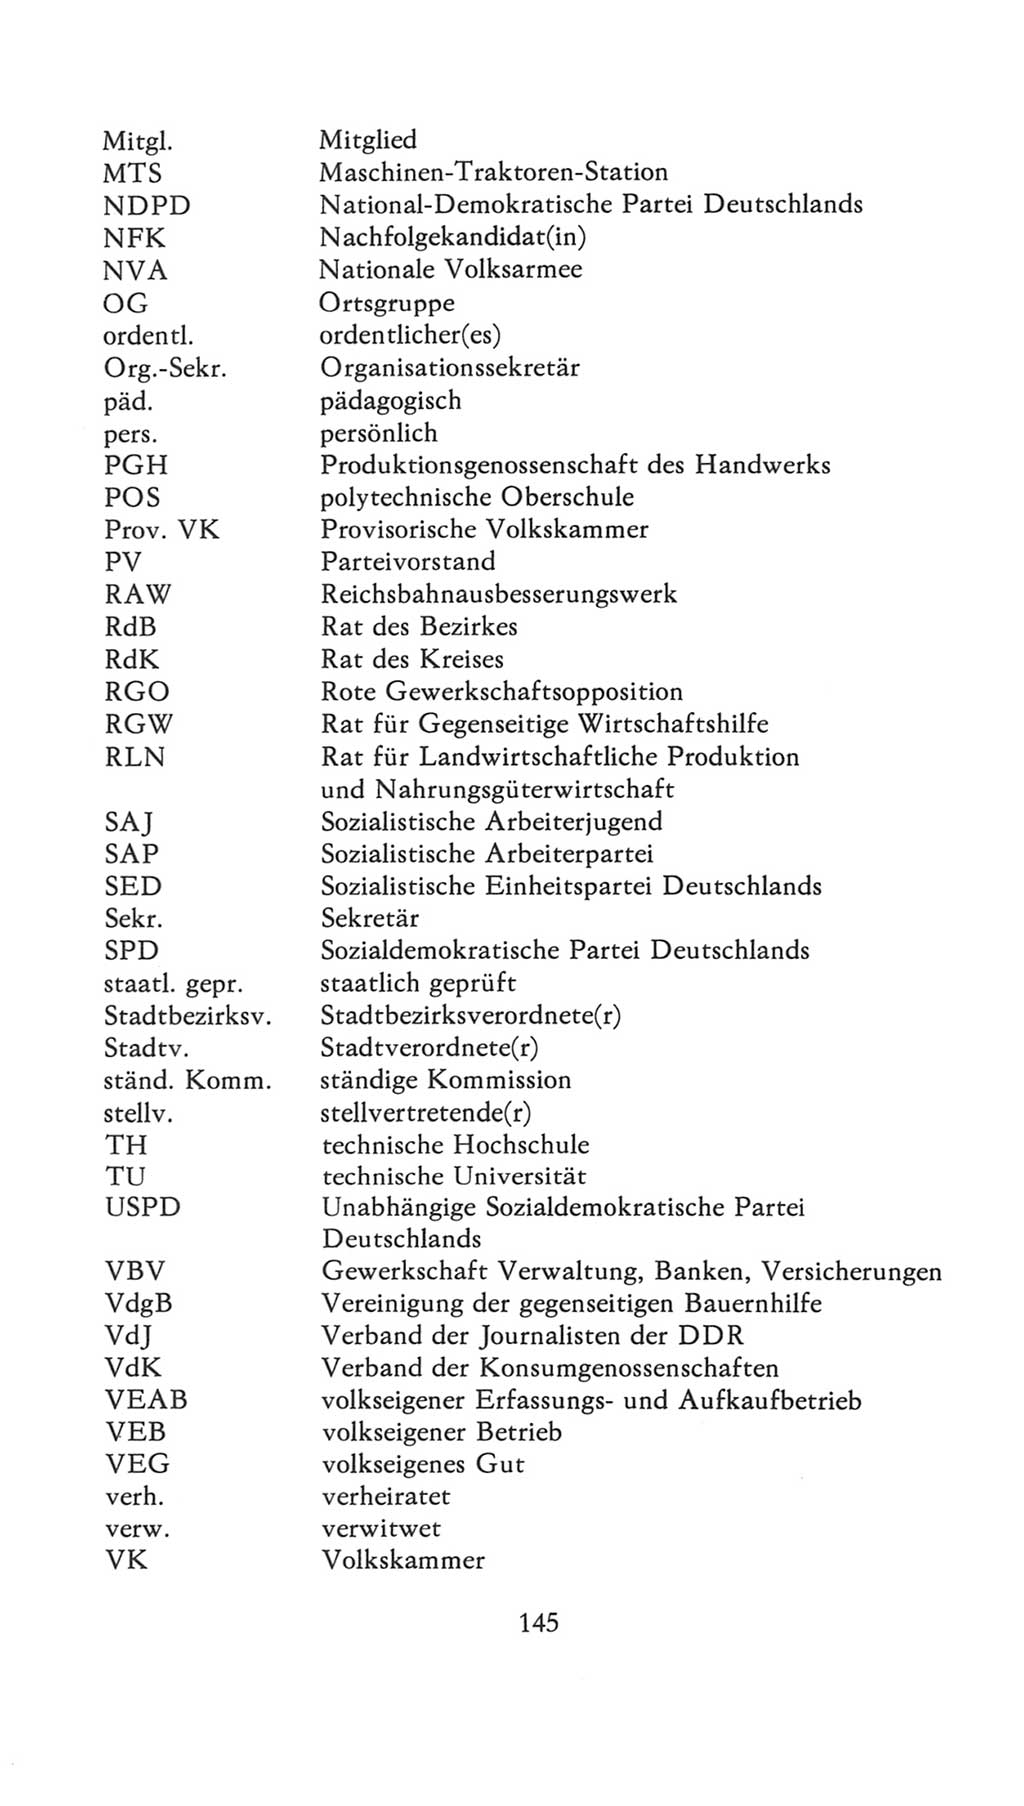 Volkskammer (VK) der Deutschen Demokratischen Republik (DDR), 7. Wahlperiode 1976-1981, Seite 145 (VK. DDR 7. WP. 1976-1981, S. 145)